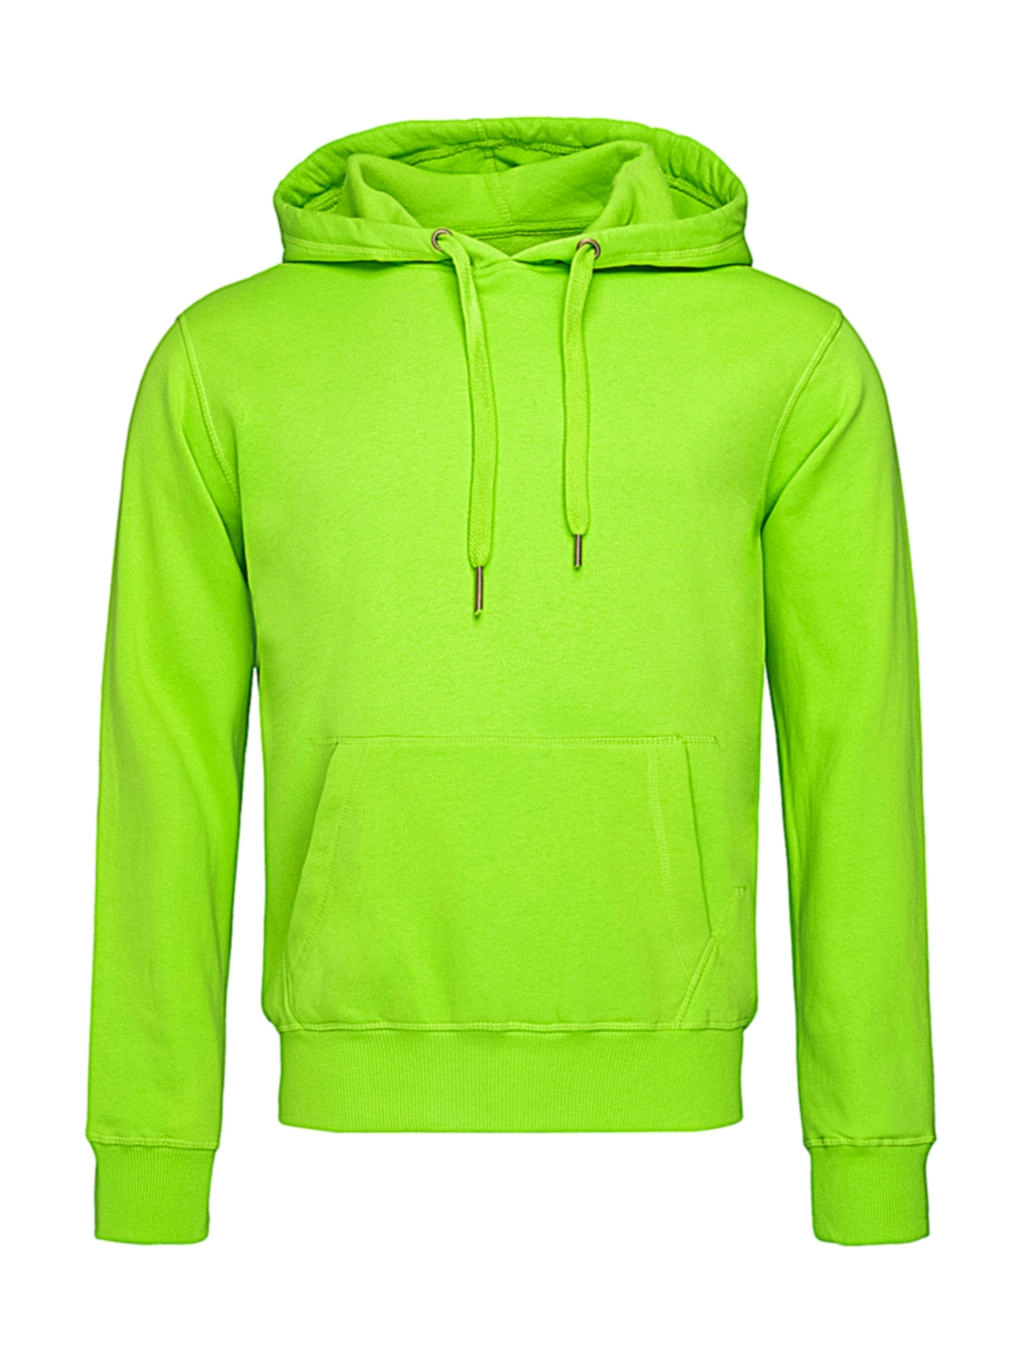 Unisex Sweat Hoodie Select zum Besticken und Bedrucken in der Farbe Kiwi Green mit Ihren Logo, Schriftzug oder Motiv.